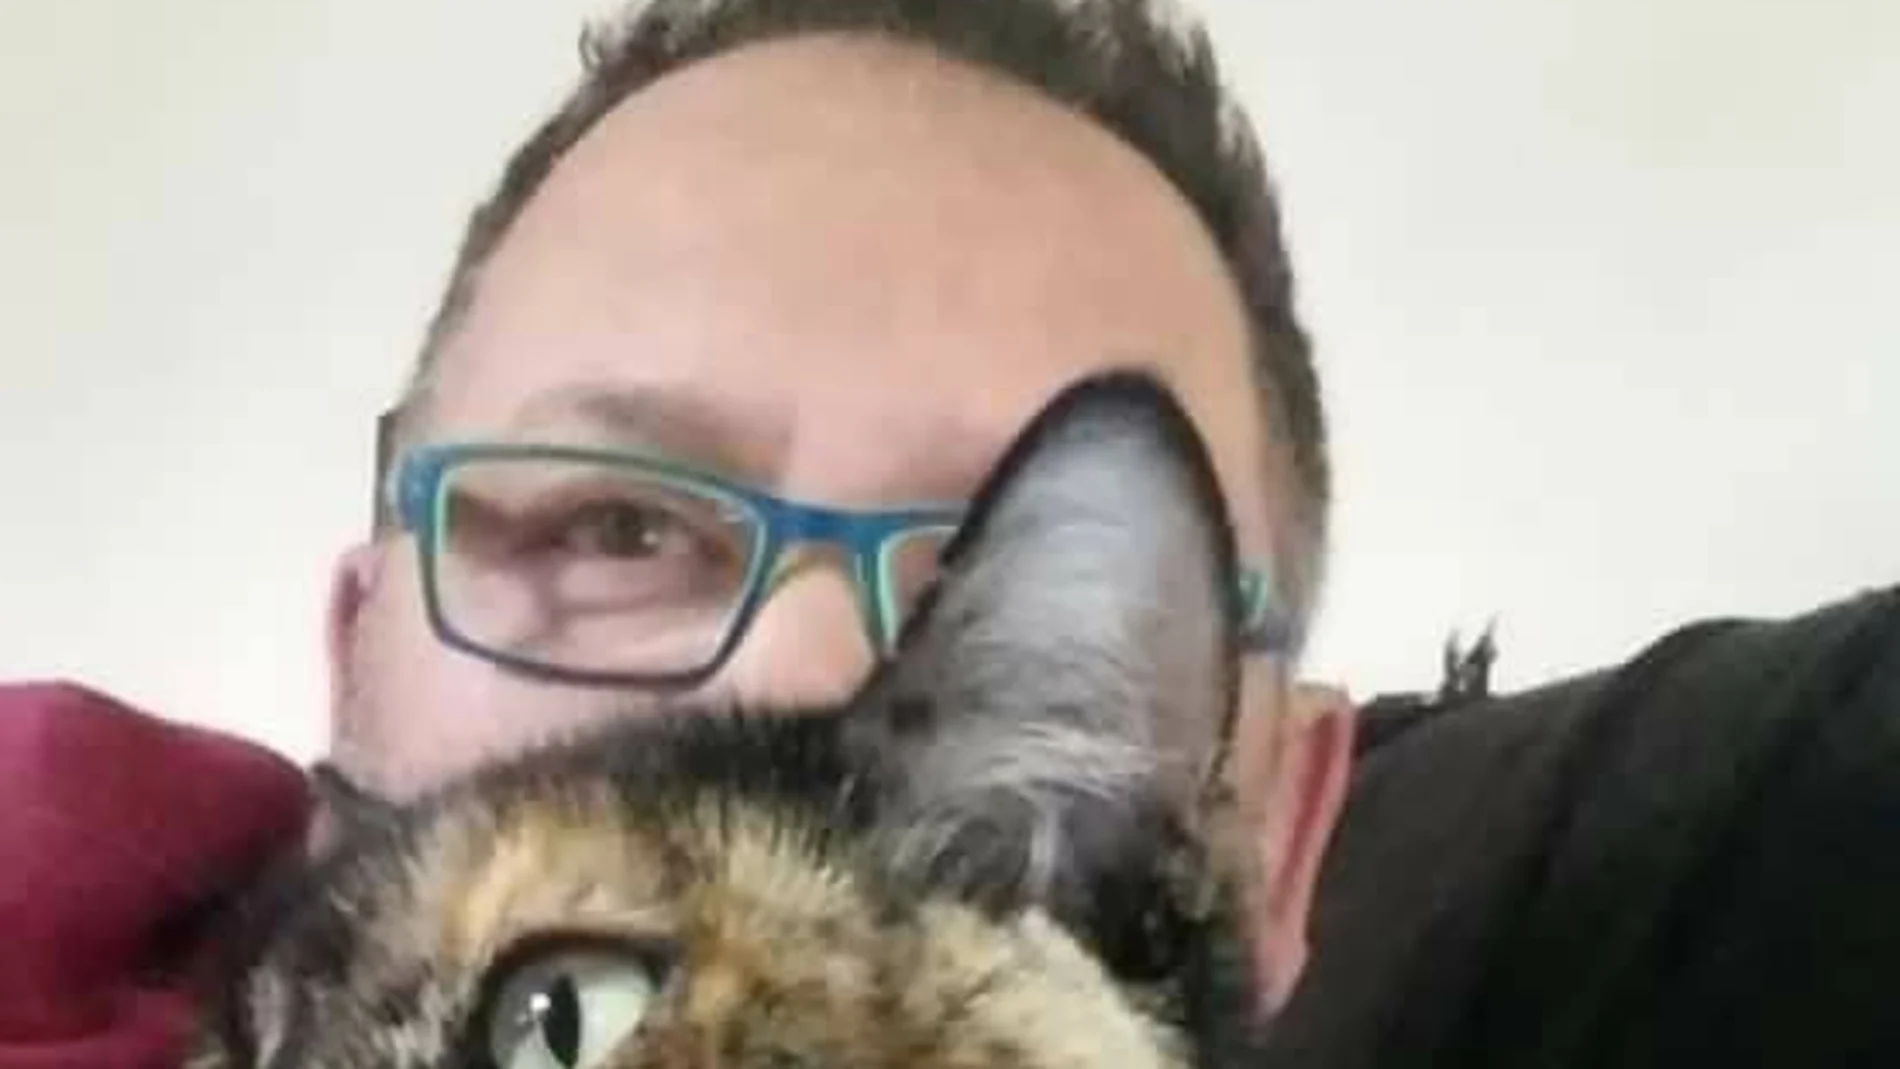 Kino Navarro y su gata han sido suspendidos porque supuestamente Kino ha infringido sus propios derechos de autor.